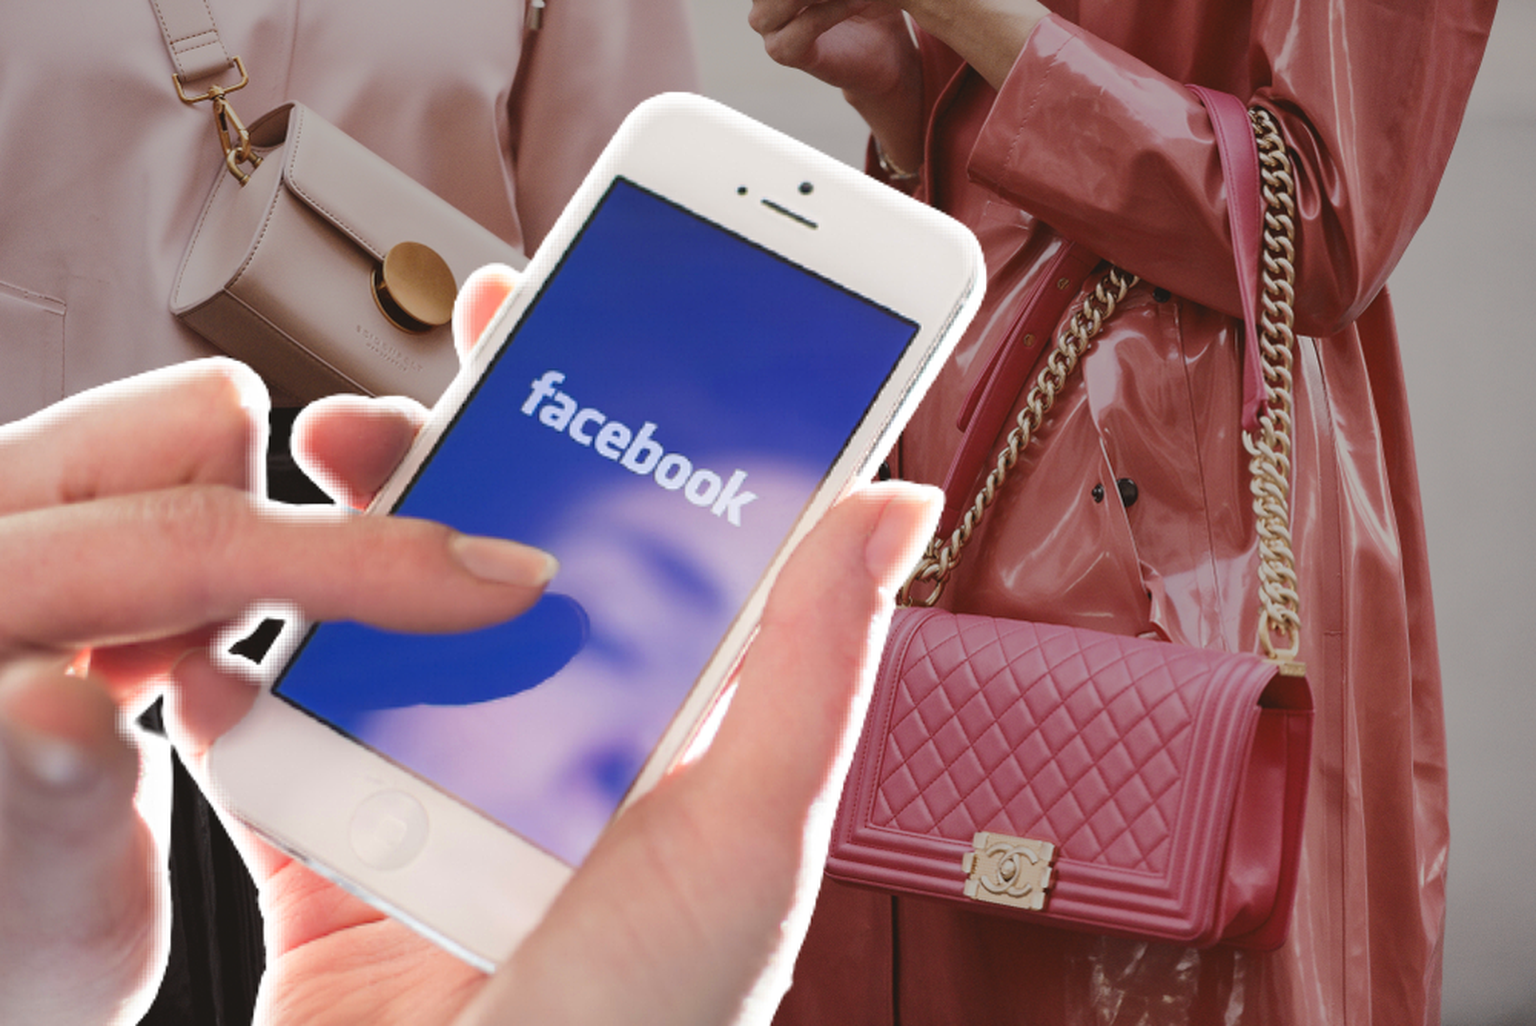 Les contrefaçons qui pullulent sur les réseaux sociaux peuvent coûter cher à Facebook qui s'attaque au marché du luxe.